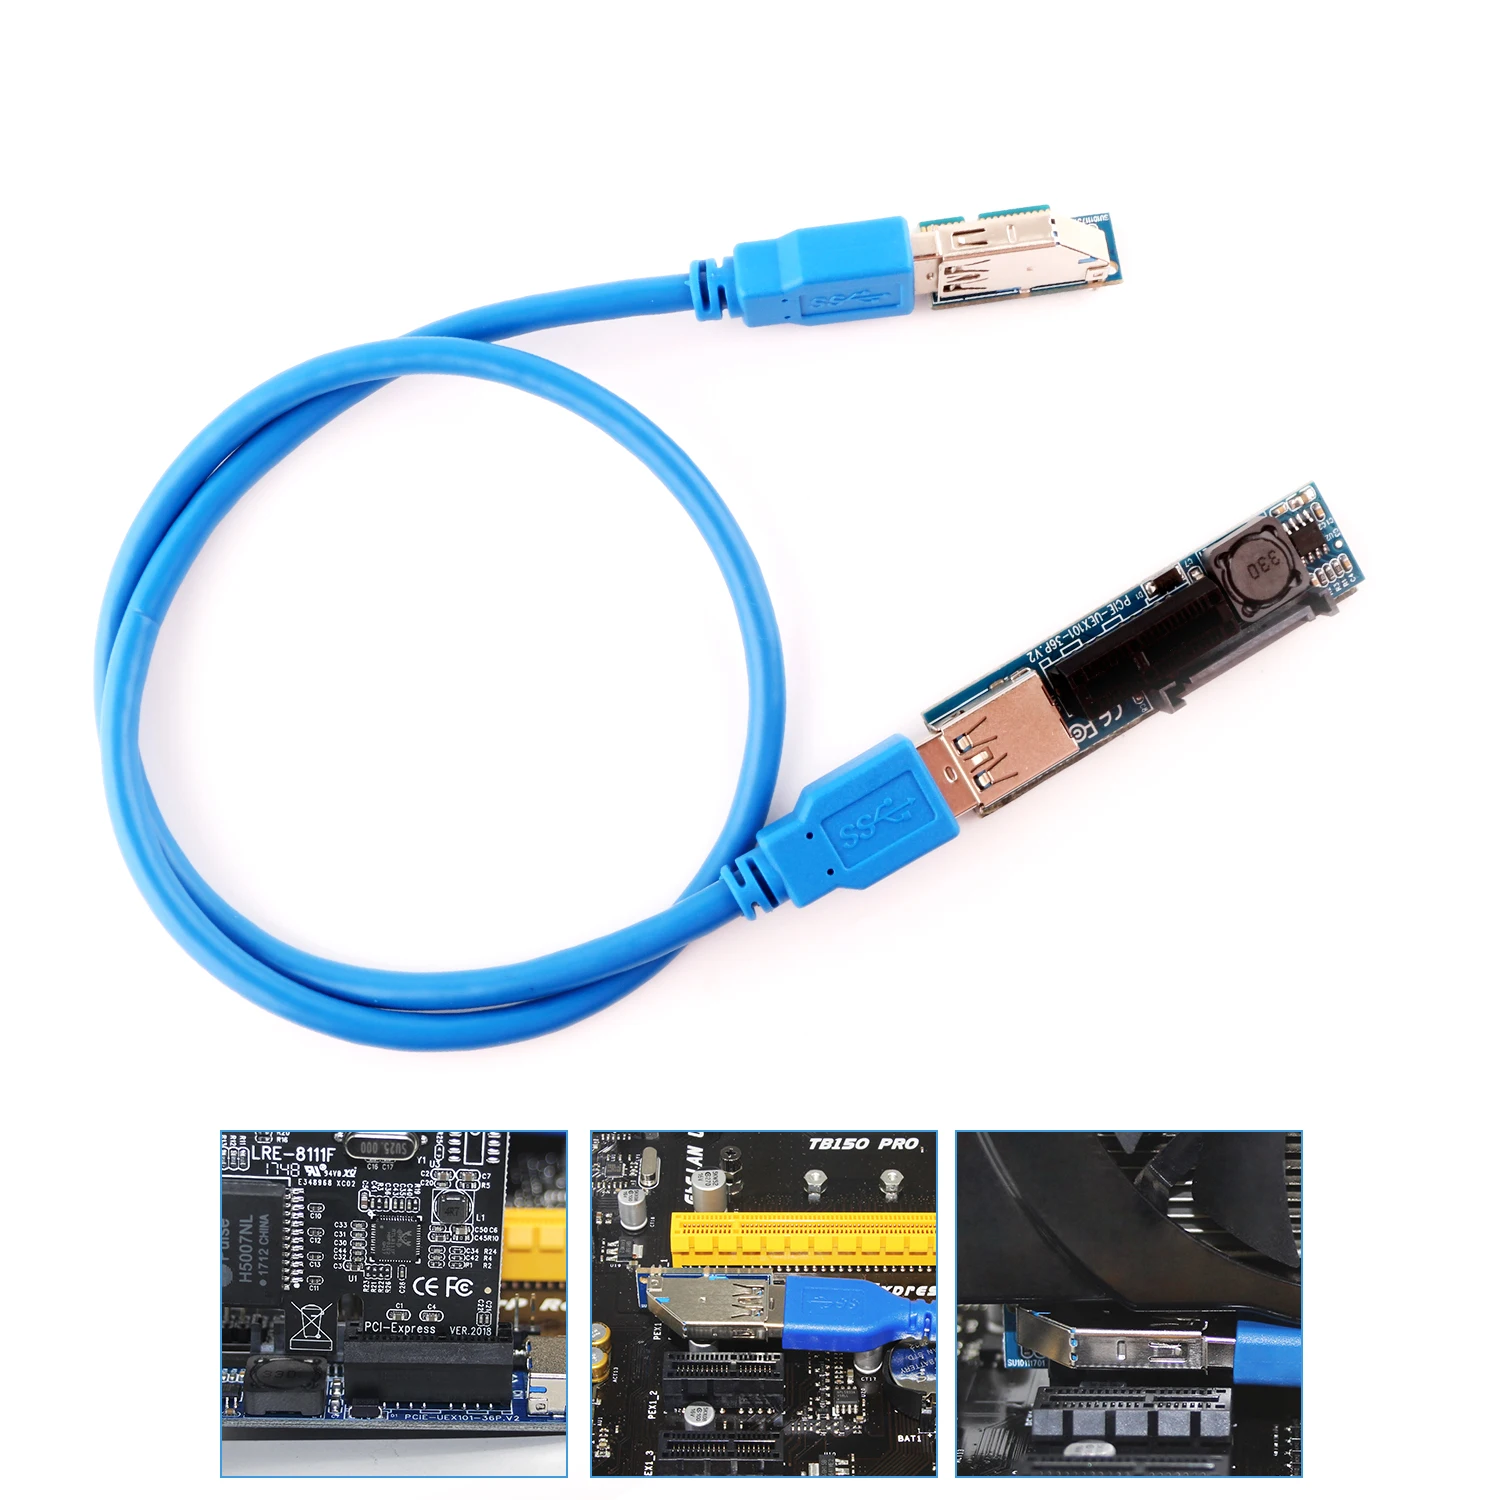 Ubit PCIE X1 карты расширения PCI-E X1 и 15-Pin SATA Интерфейс переходная пластина с USB 3,0 60 см кабель-удлинитель - Цвет: Синий